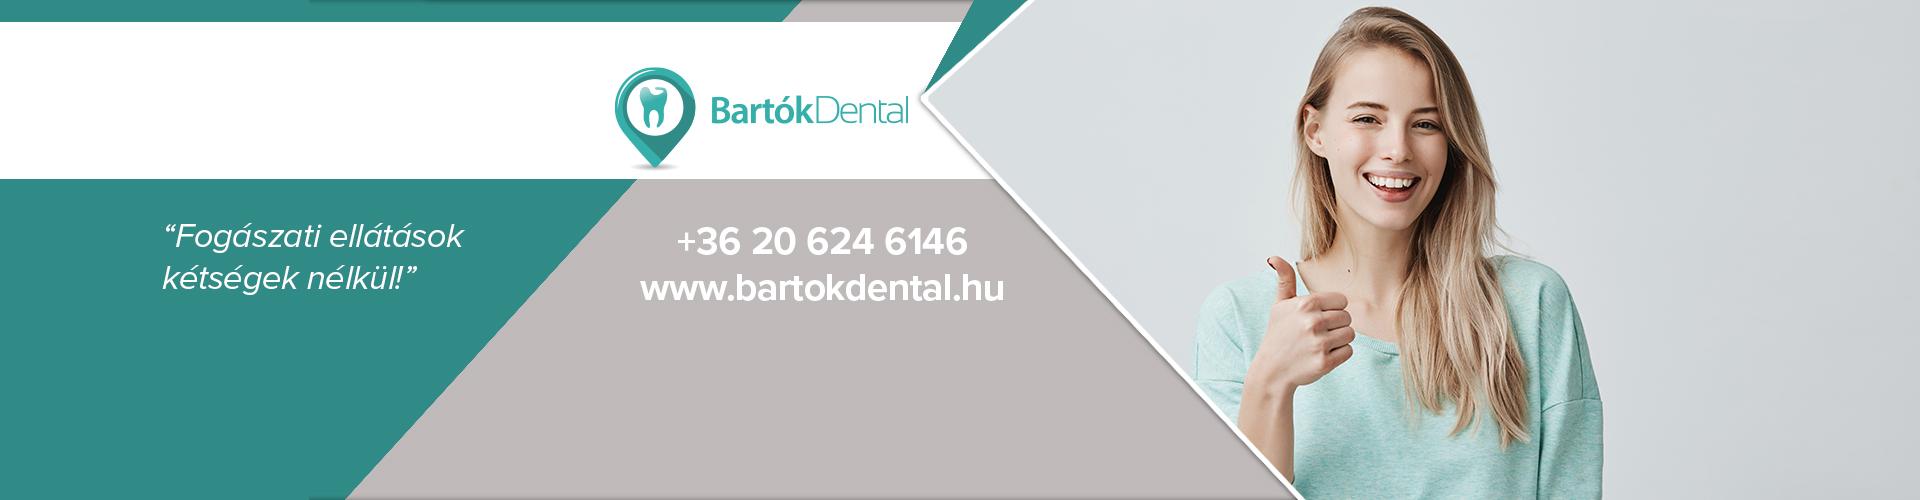 Bartók Dental